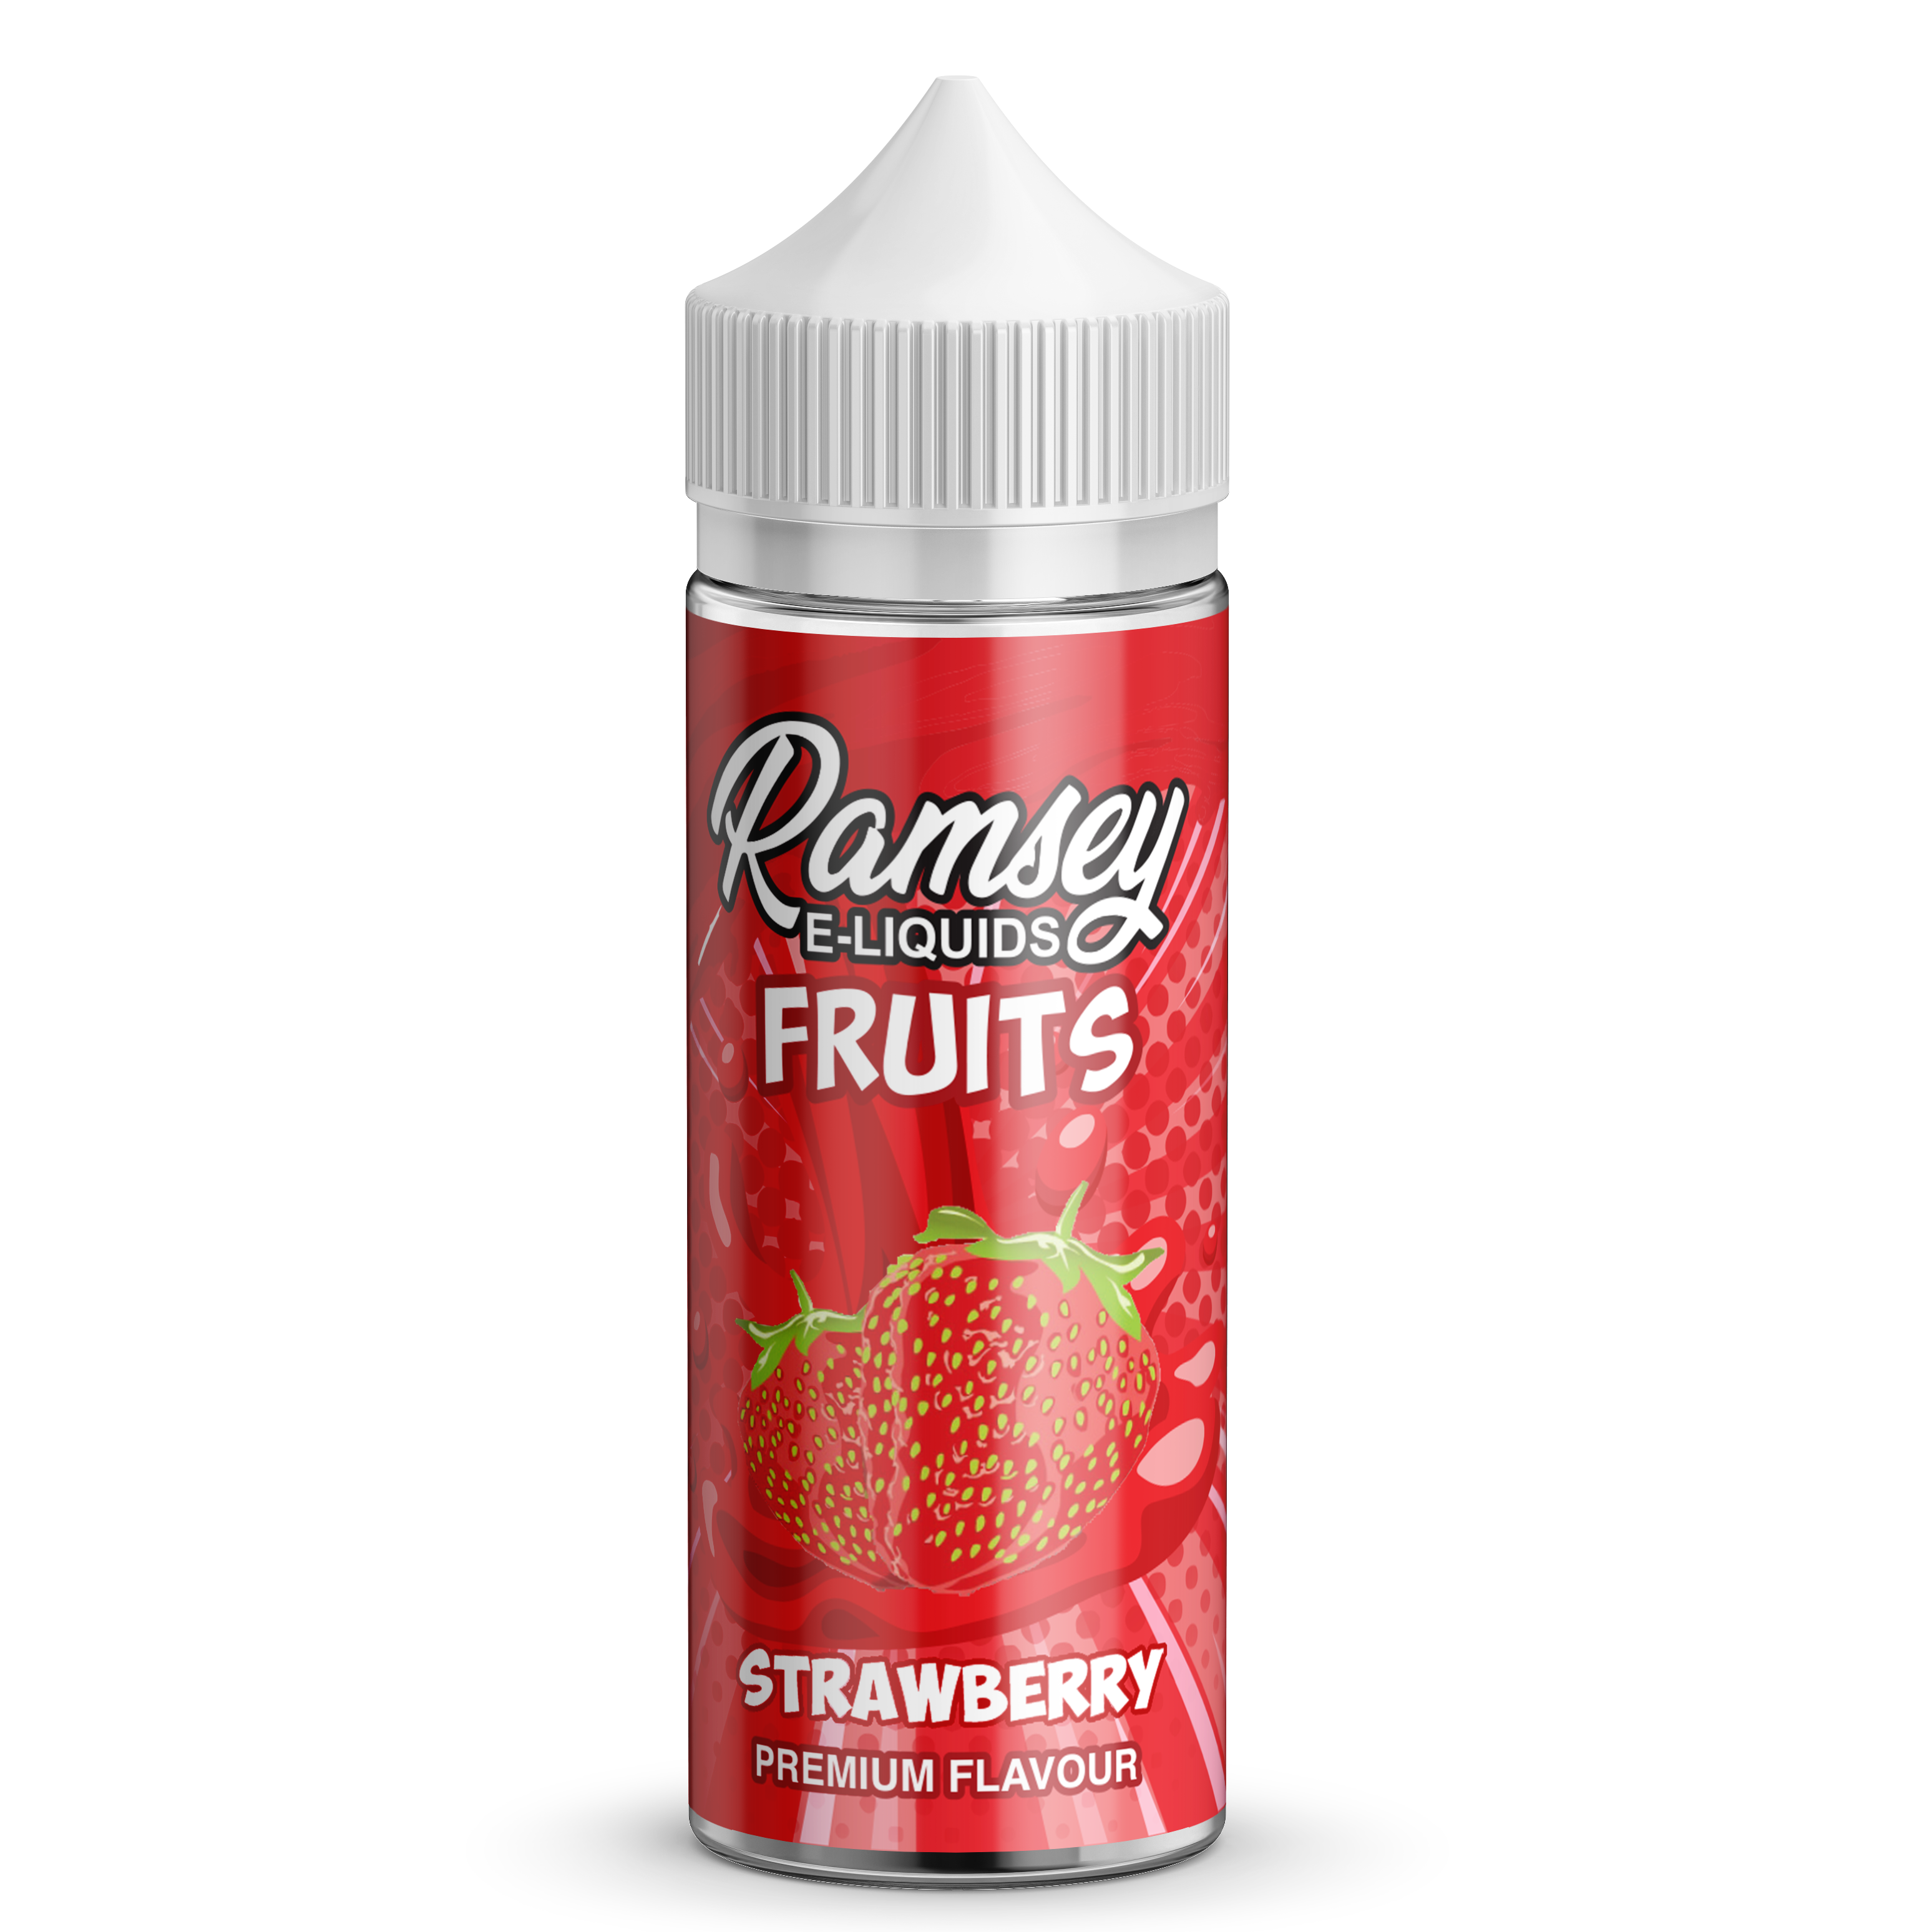 Ramsey E-Liquids Fruits Strawberry 0mg 100ml Shortfill E-Liquid